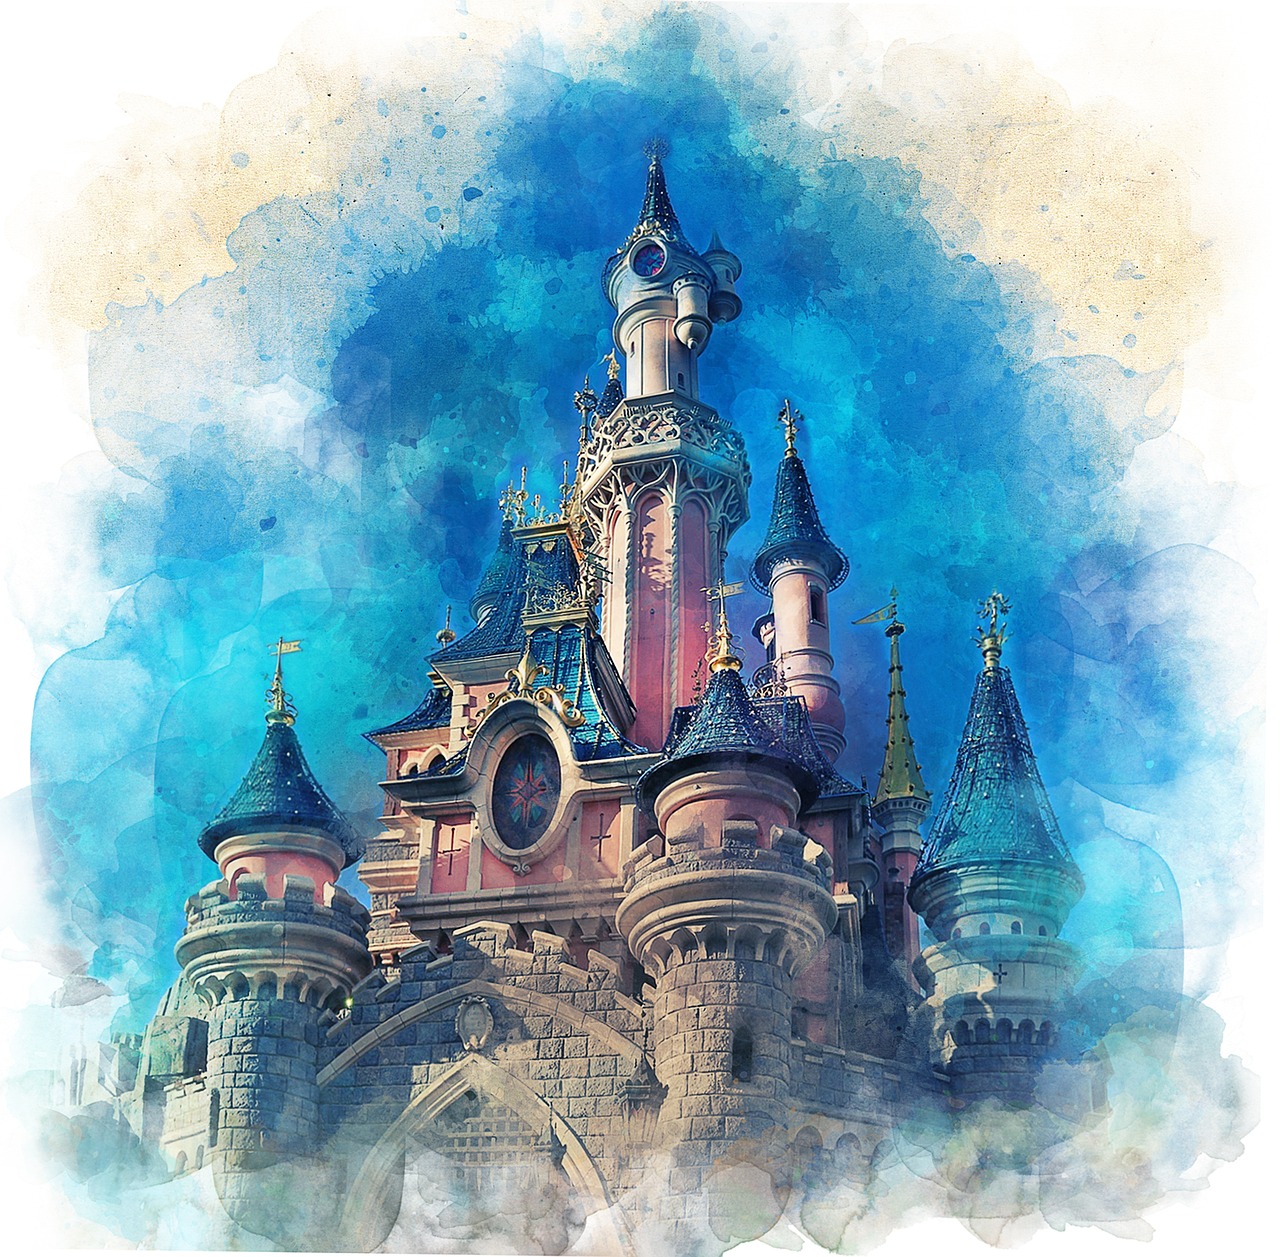 Magie à Disneyland Paris en 2 jours